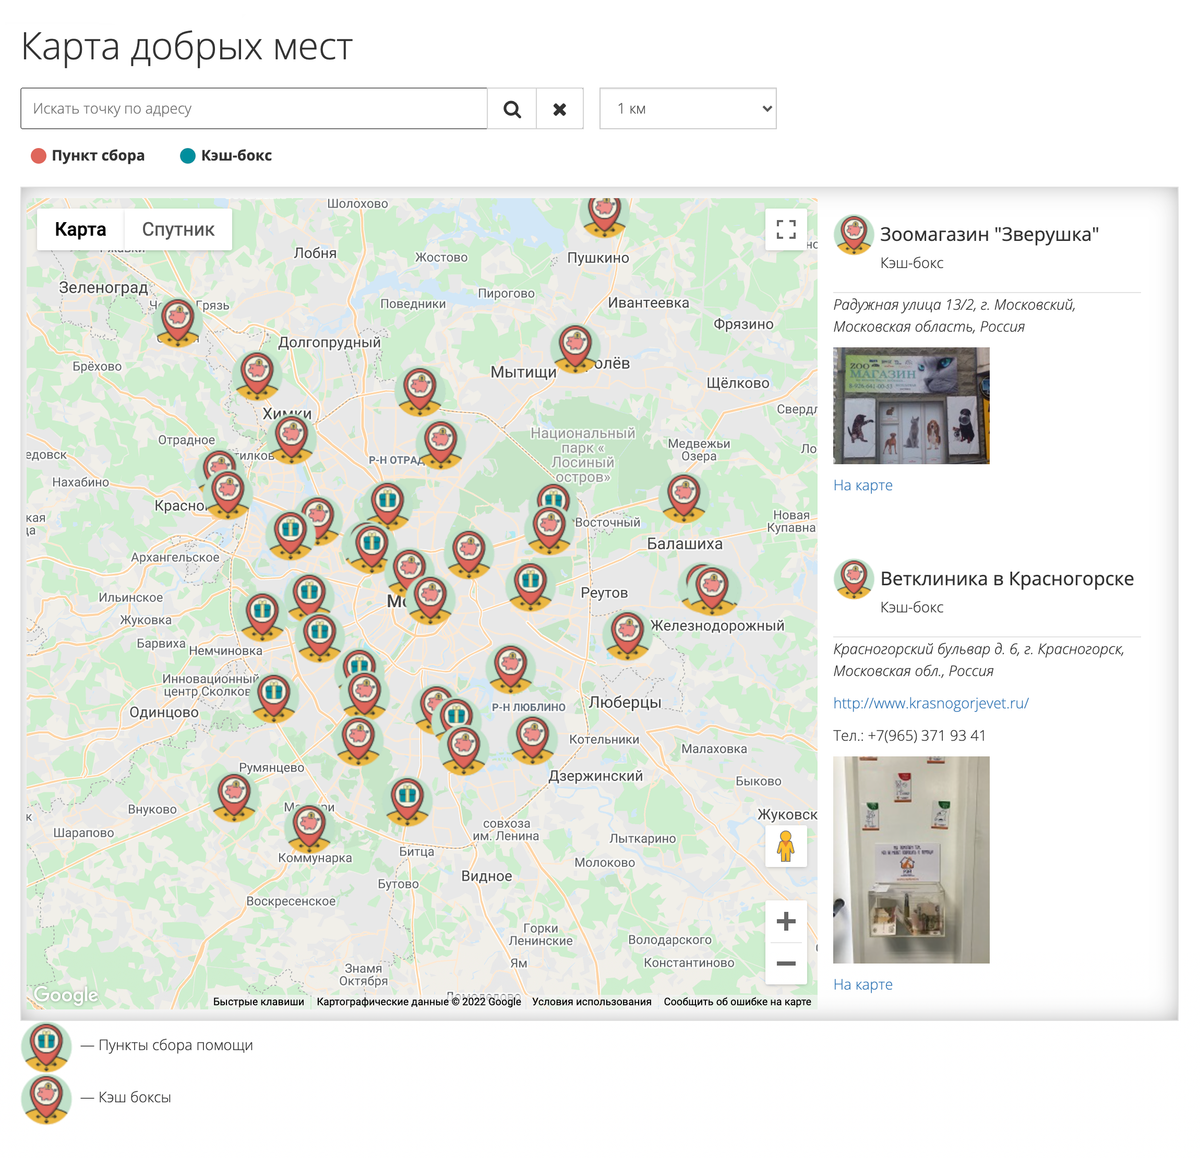 Карта мест в Москве и Подмосковье, куда можно сдать корма и вещи для&nbsp;животных из приюта